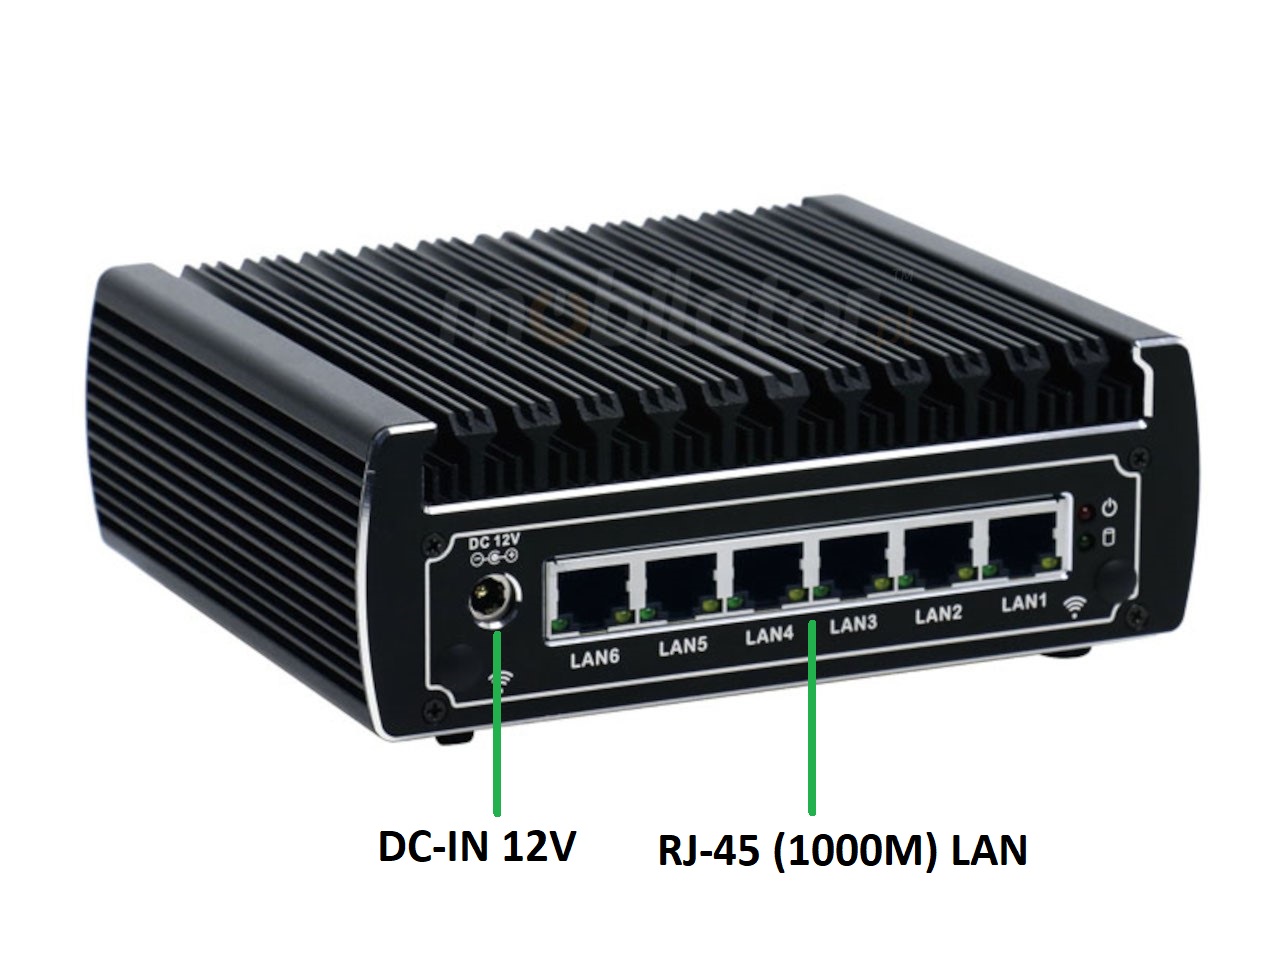   IBOX N133 v.4, zcza ty, SSD, DDR4, przemysowy, may, szybki, niezawodny, fanless, industrial, small, LAN, INTEL i3